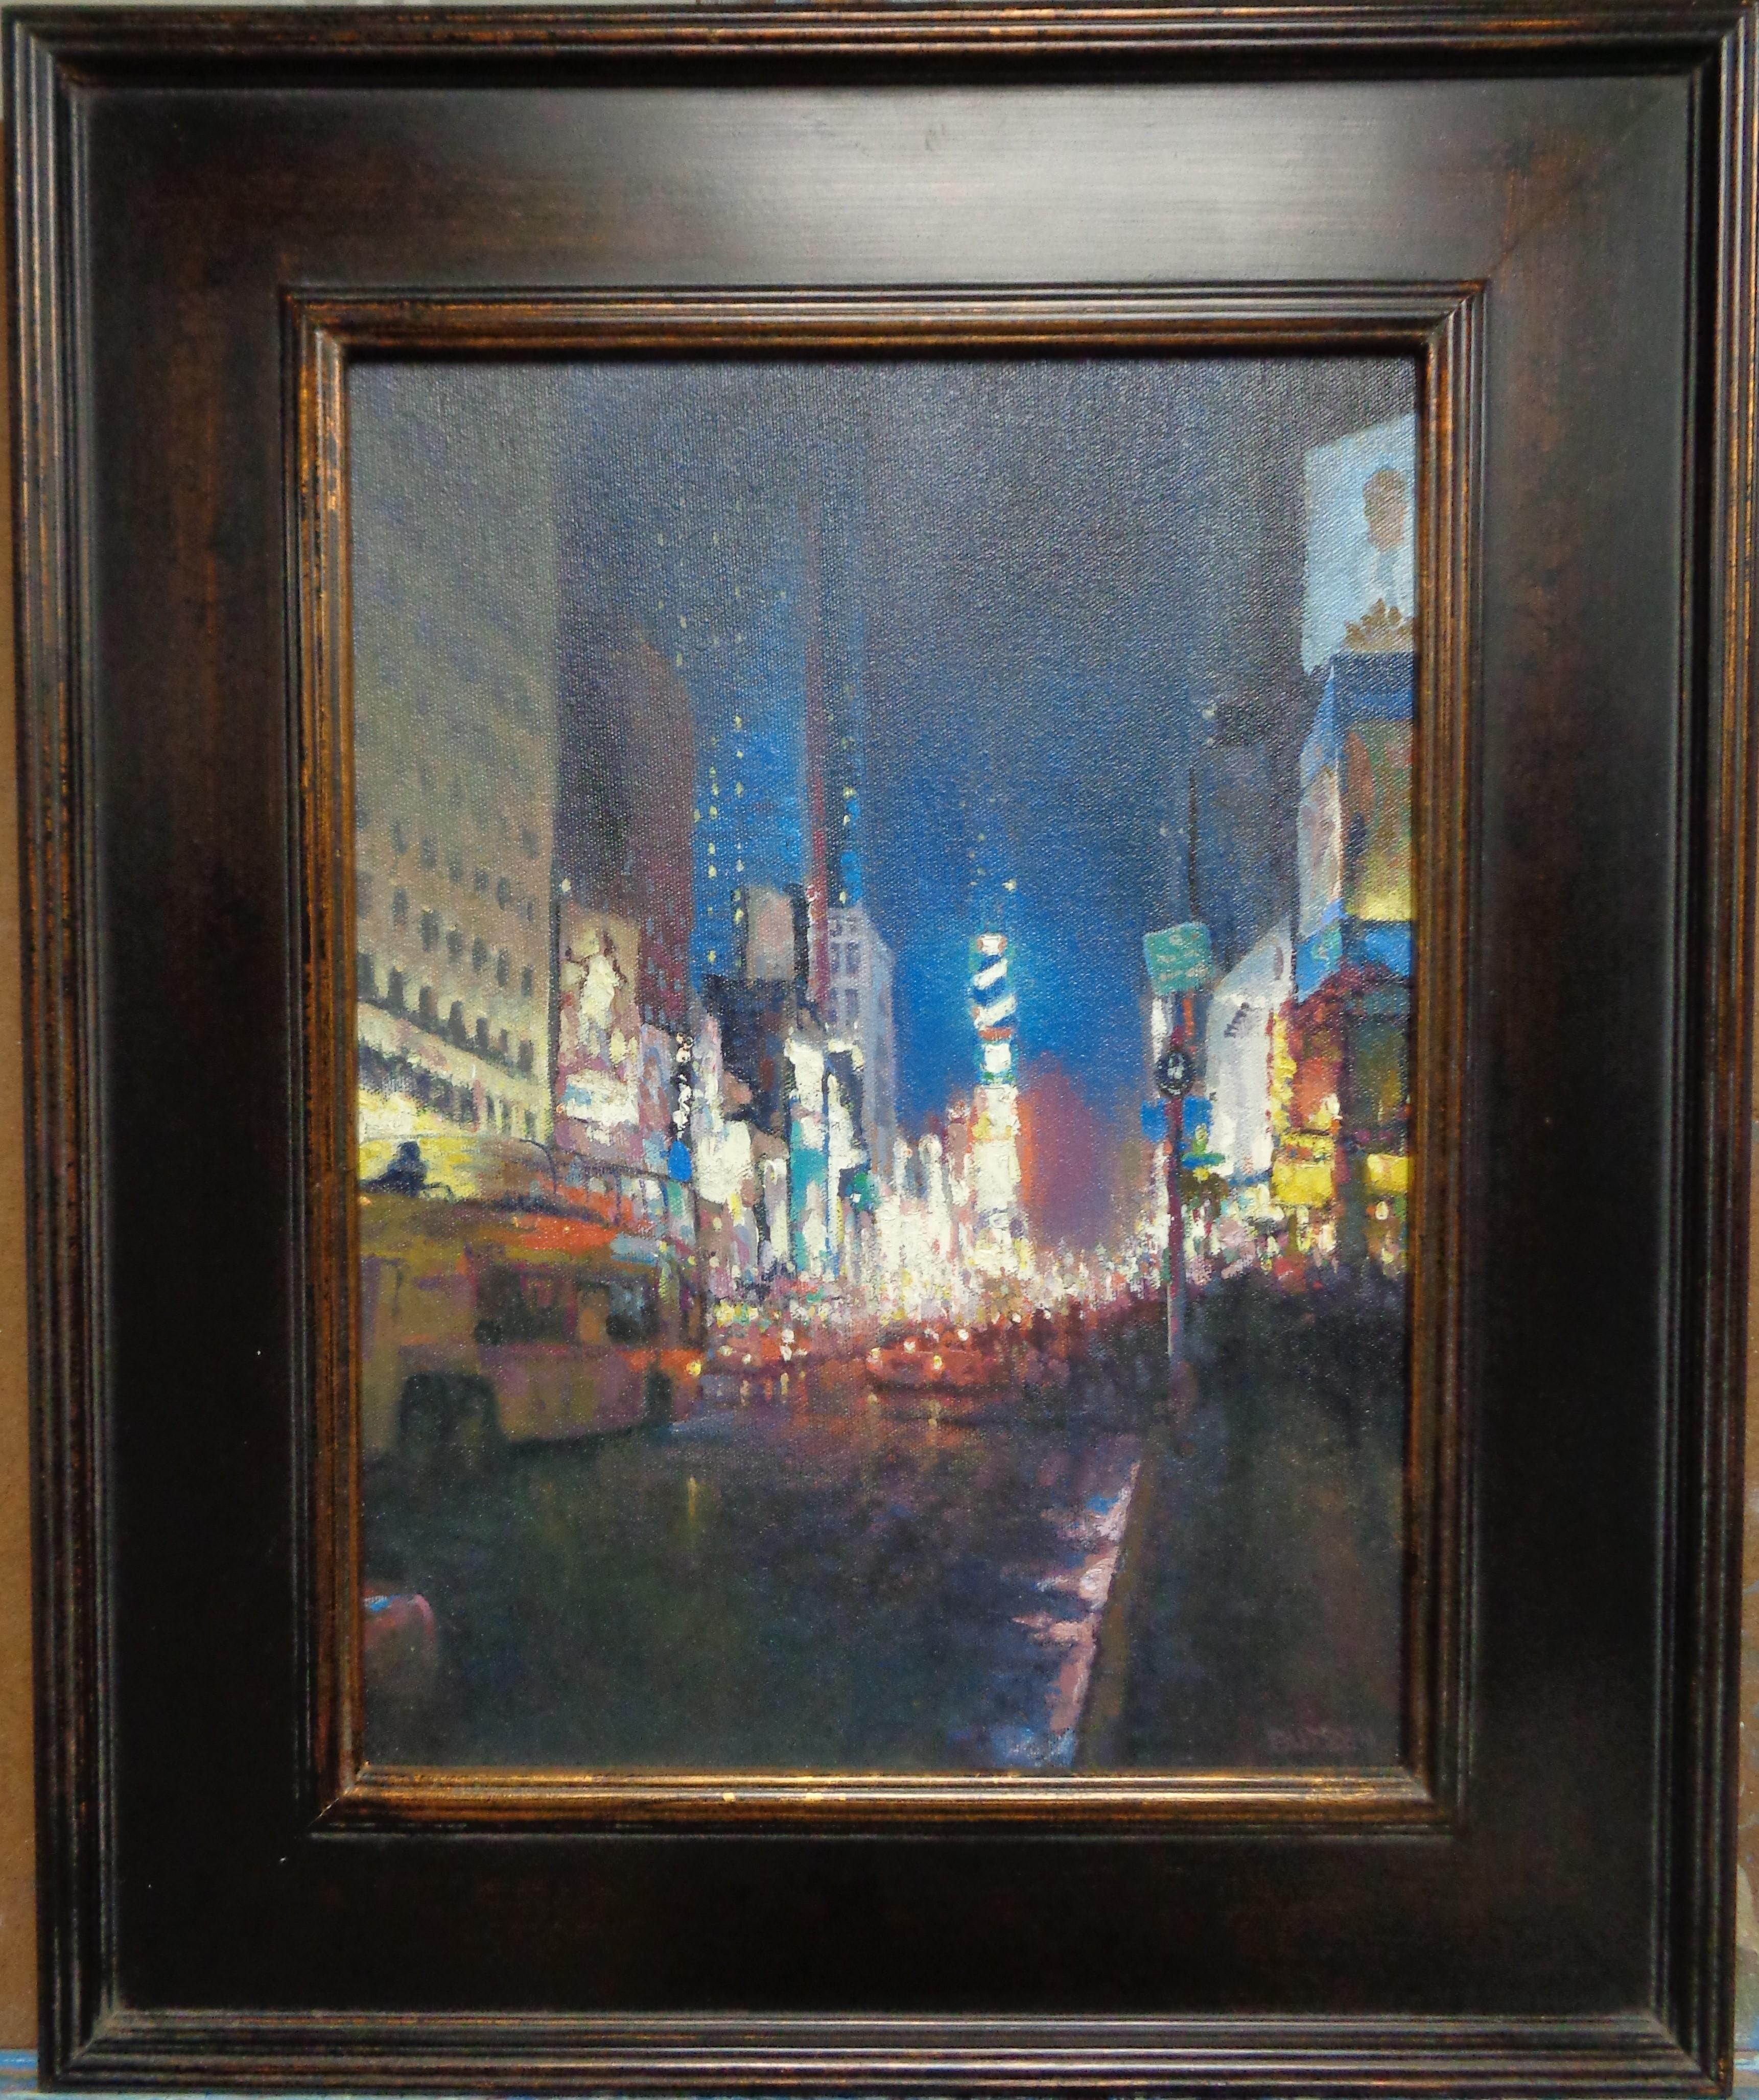 Die Abendshow, Times Square
Öl/Platte
16 x 12 ungerahmt, 22,5 x 18,5 gerahmt, ist ein Ölgemälde auf Leinwand des preisgekrönten zeitgenössischen Künstlers Michael Budden, das das belebte Nachtleben am NYC Times Square zeigt. Dies war eine meiner